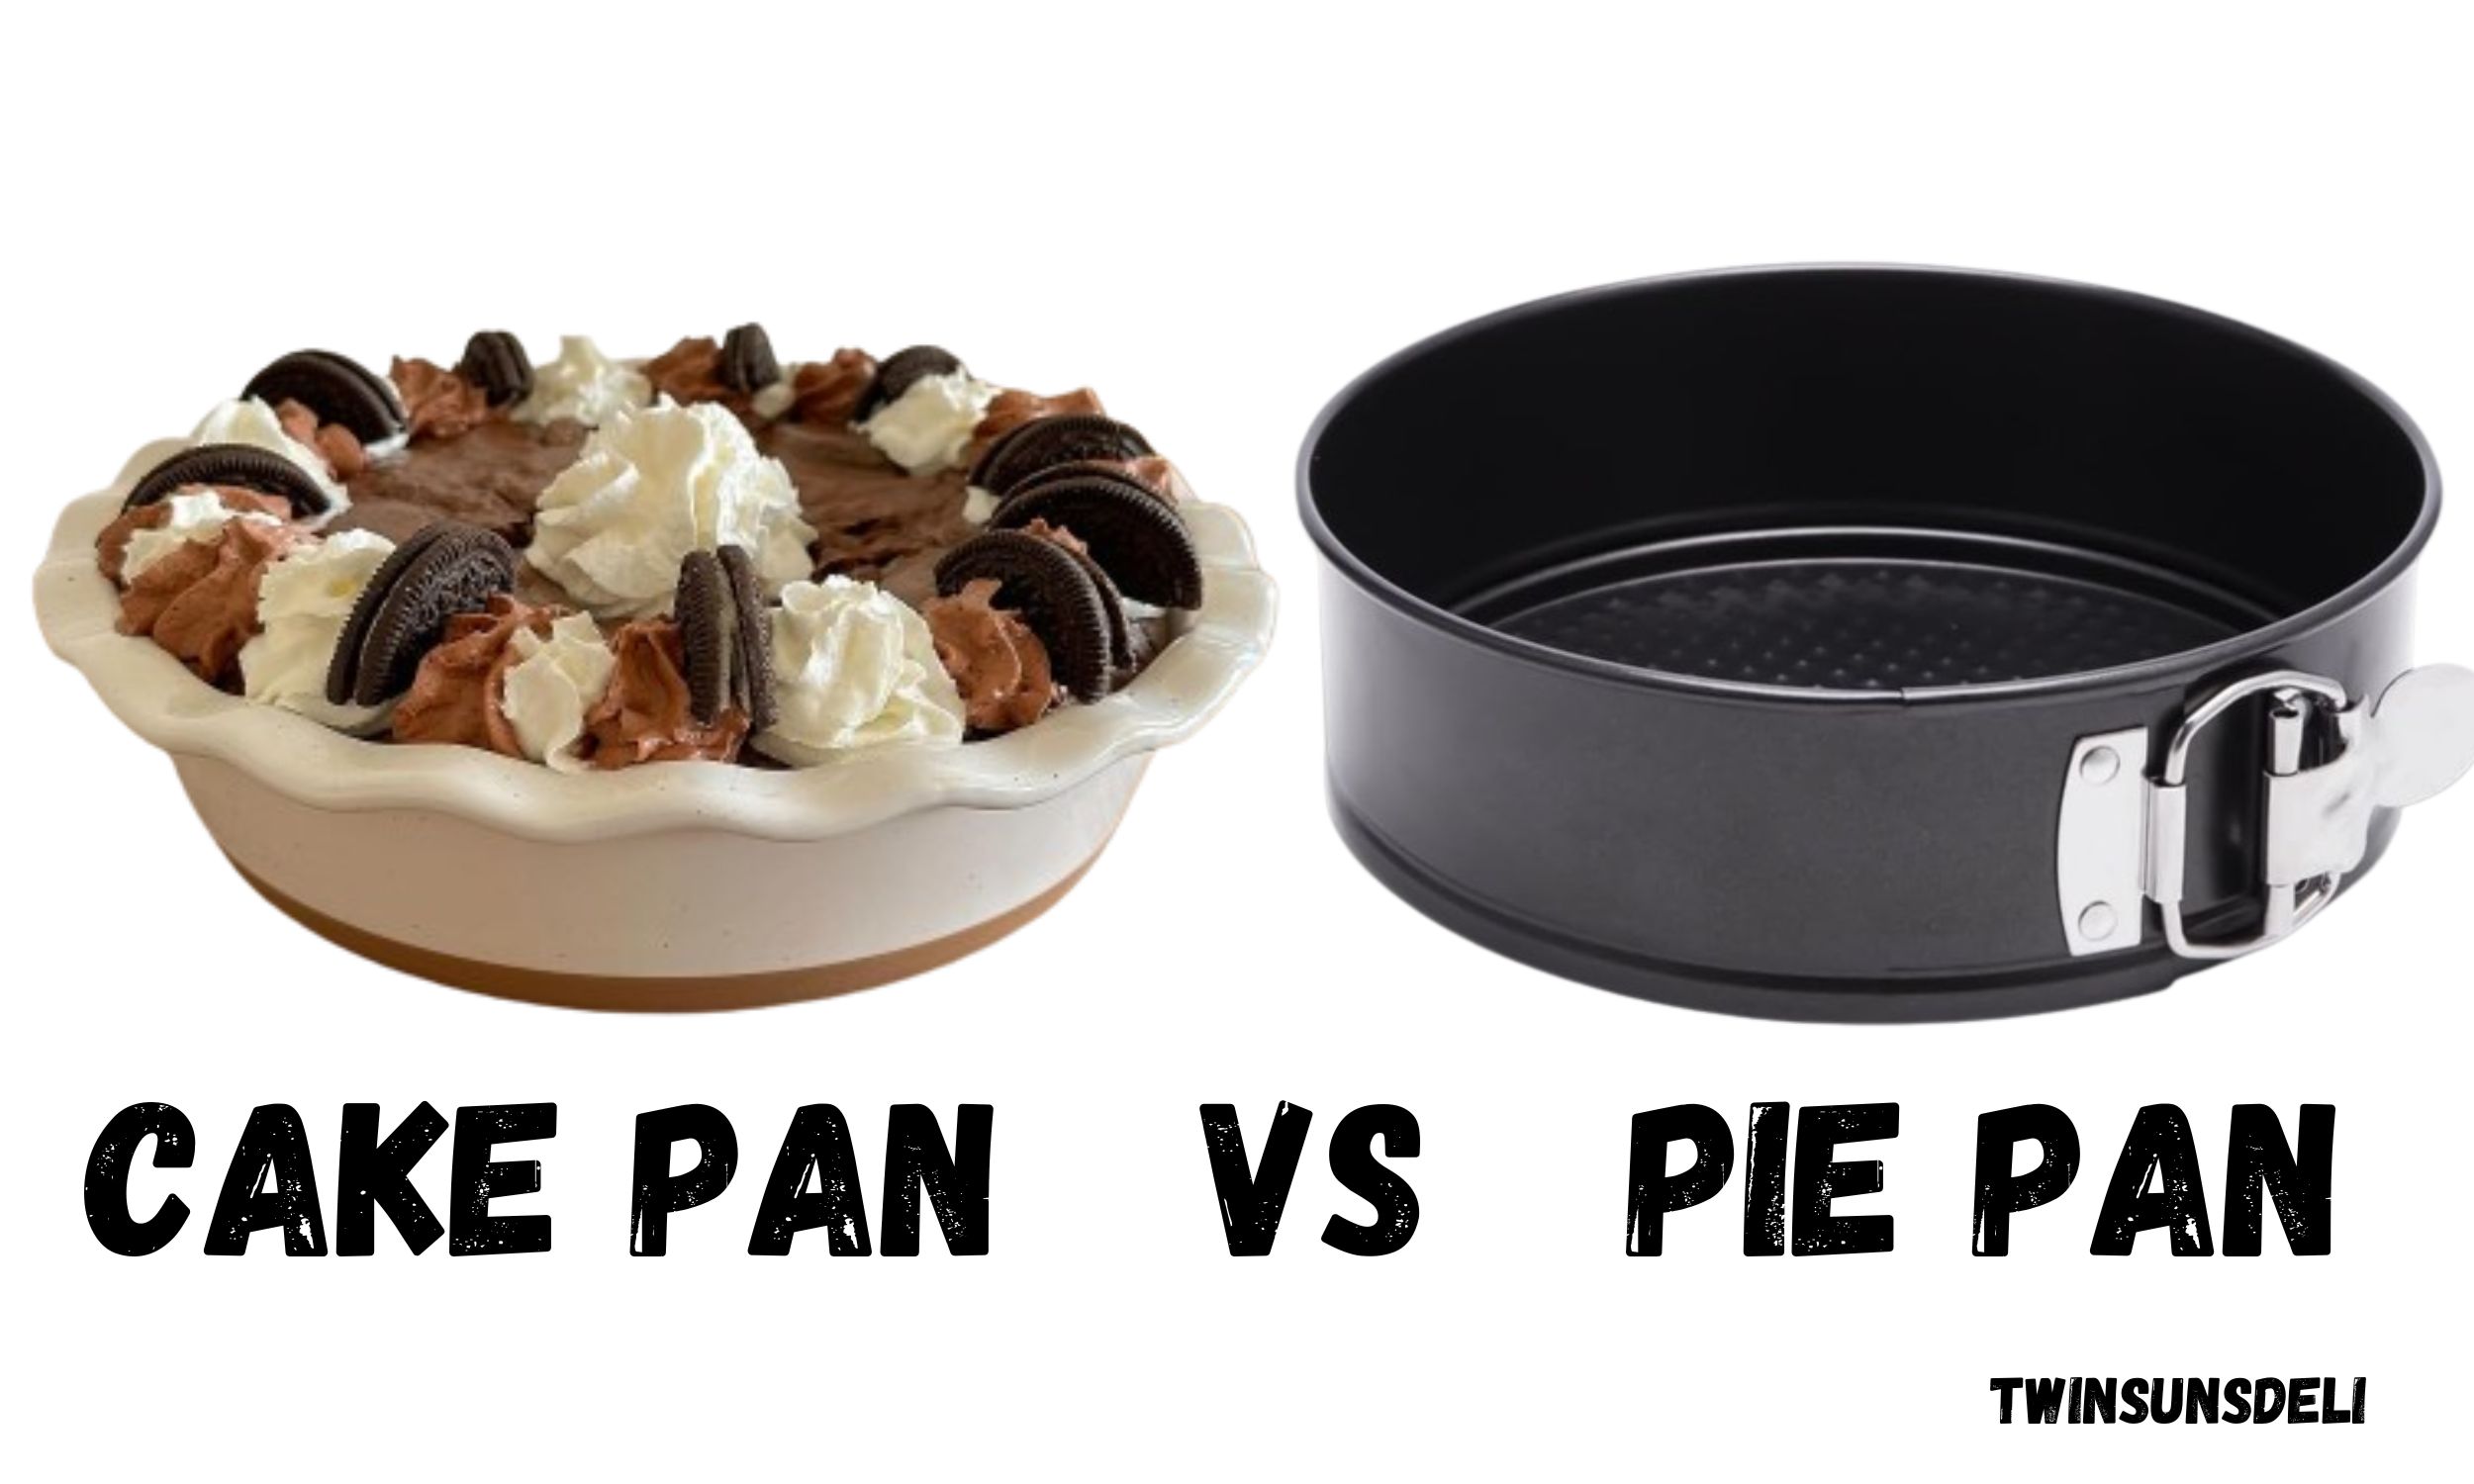 Cake pan vs Pie pan